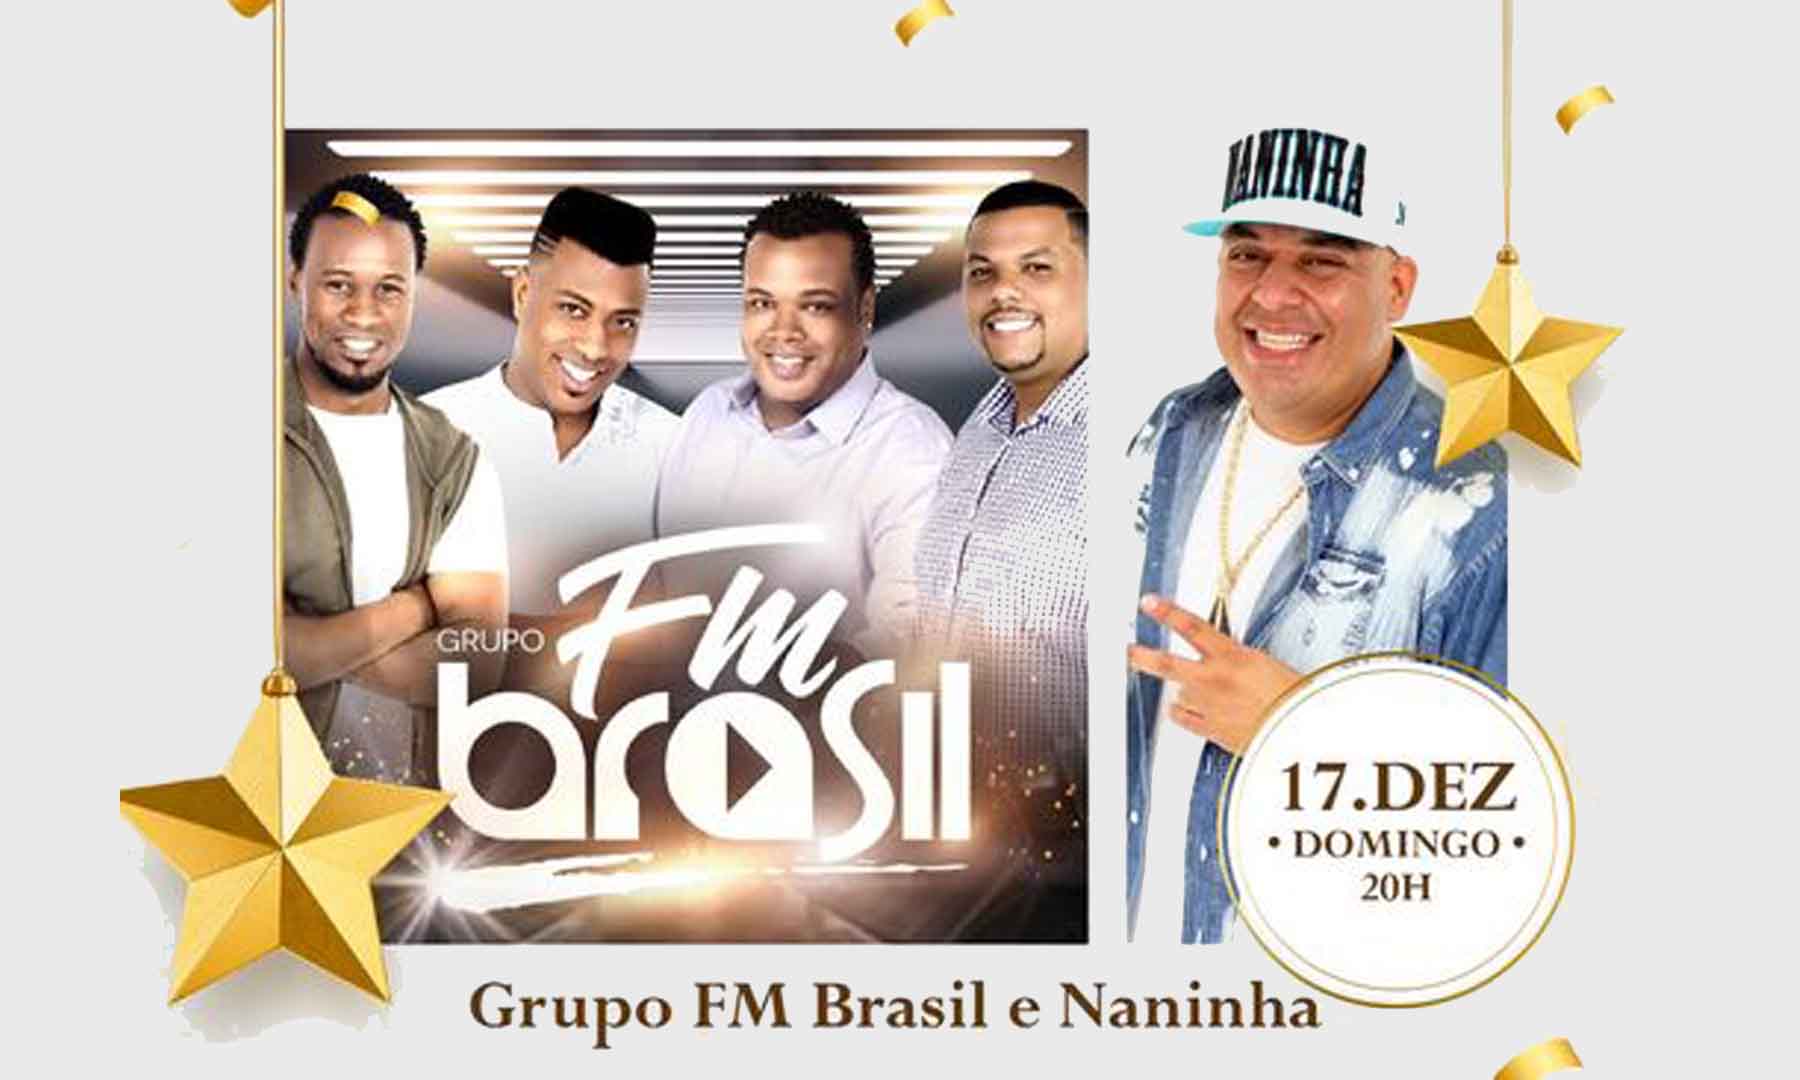 GRUPO FM BRASIL E NANINHA: NOITE DE MÚSICA E EMOÇÃO NO BARRA MAGIA NO FESTIVAL DE FINAL DE ANO EM BARRA BONITA